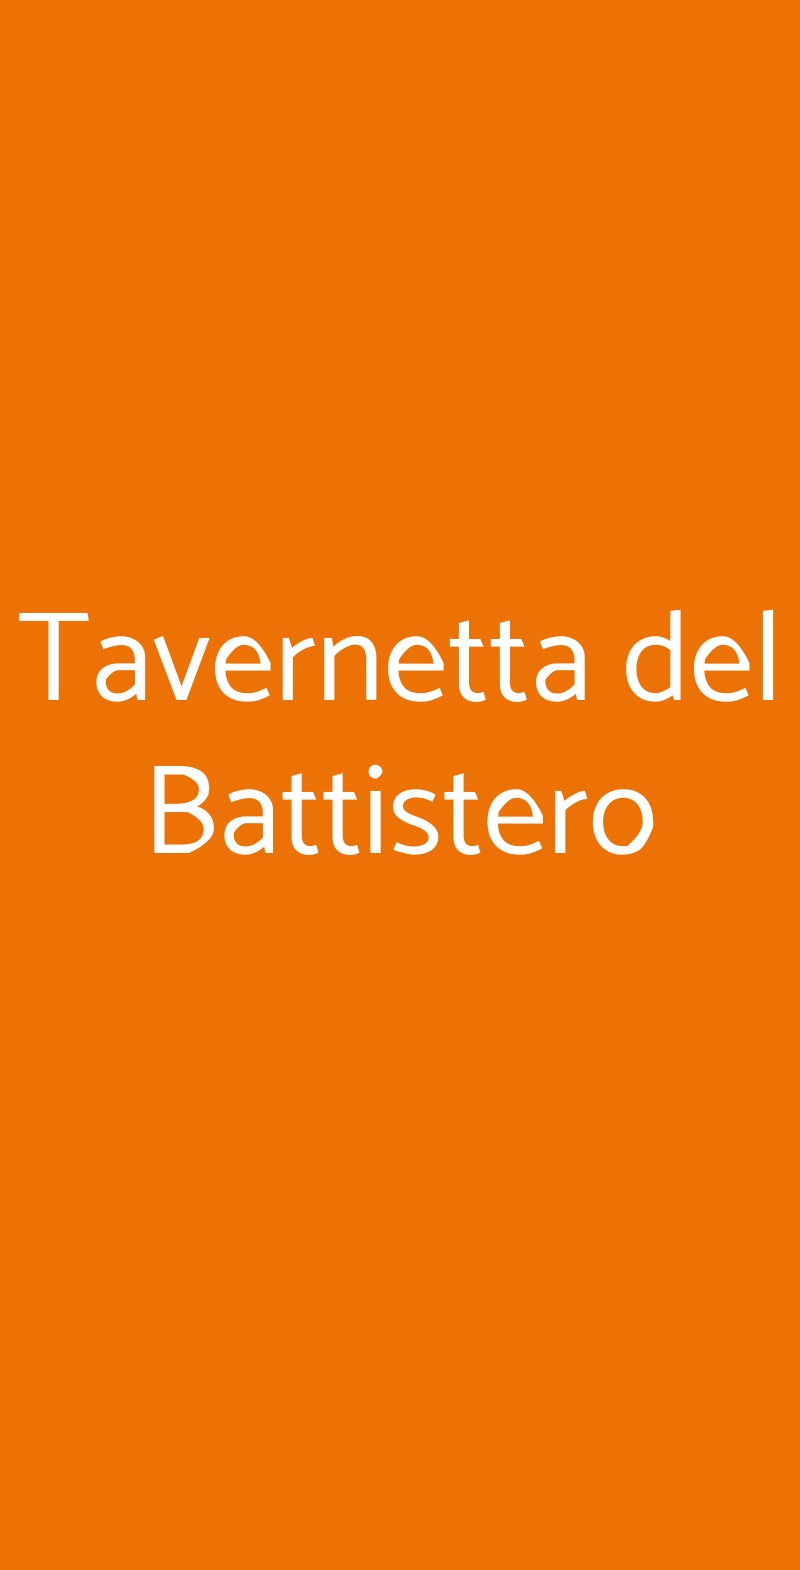 Tavernetta del Battistero Firenze menù 1 pagina